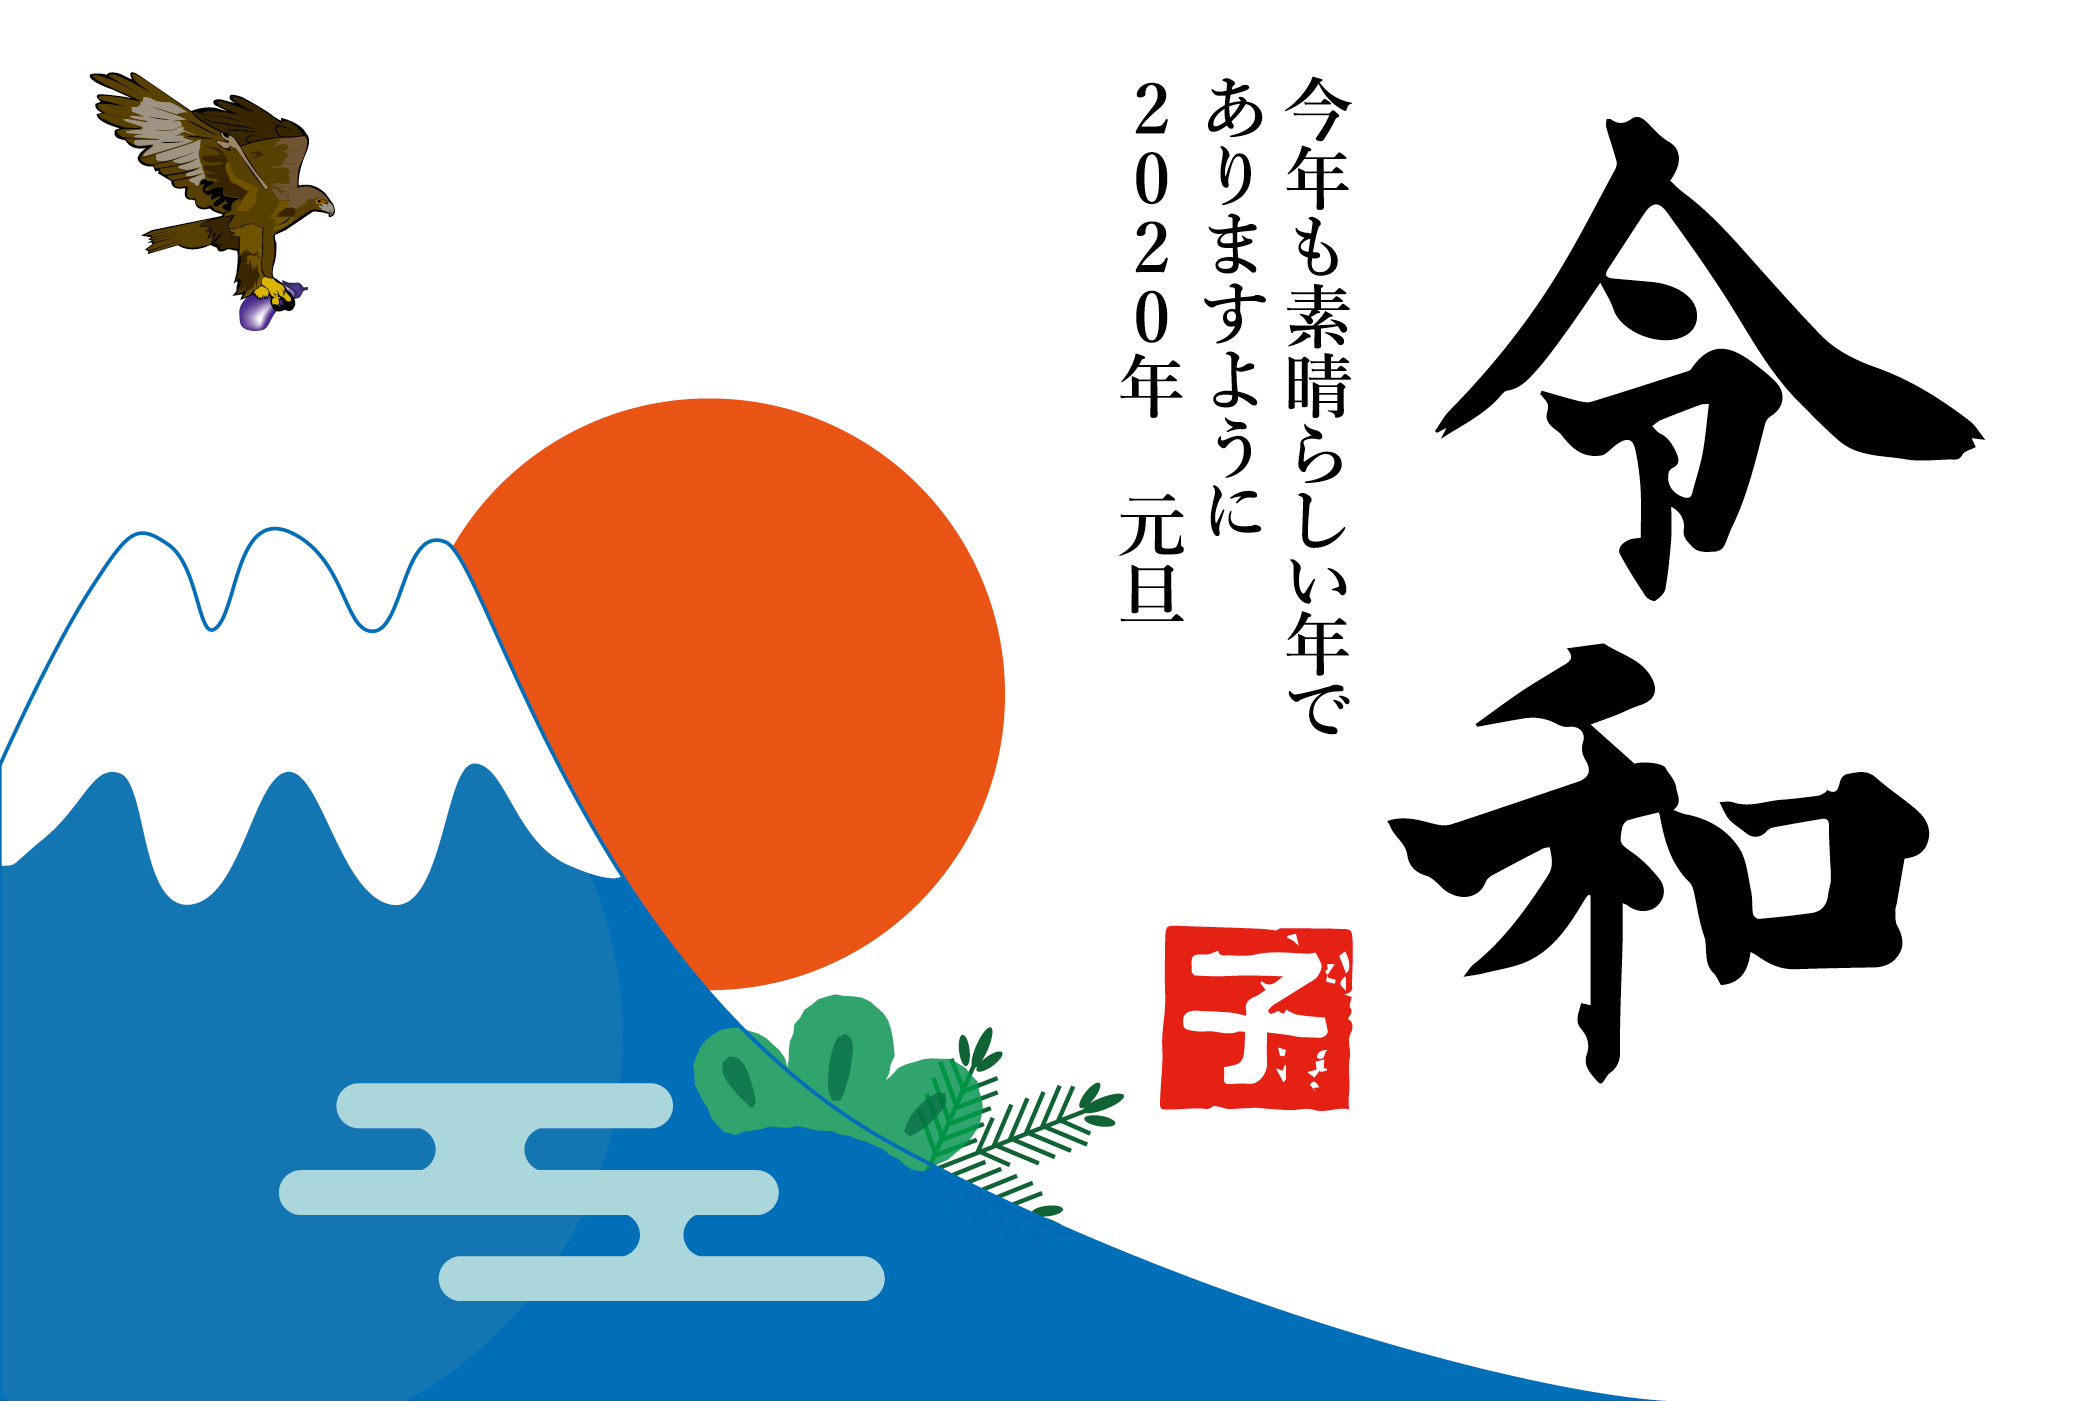 令和元年2020年子年富士山と初の日出の年賀状テンプレート